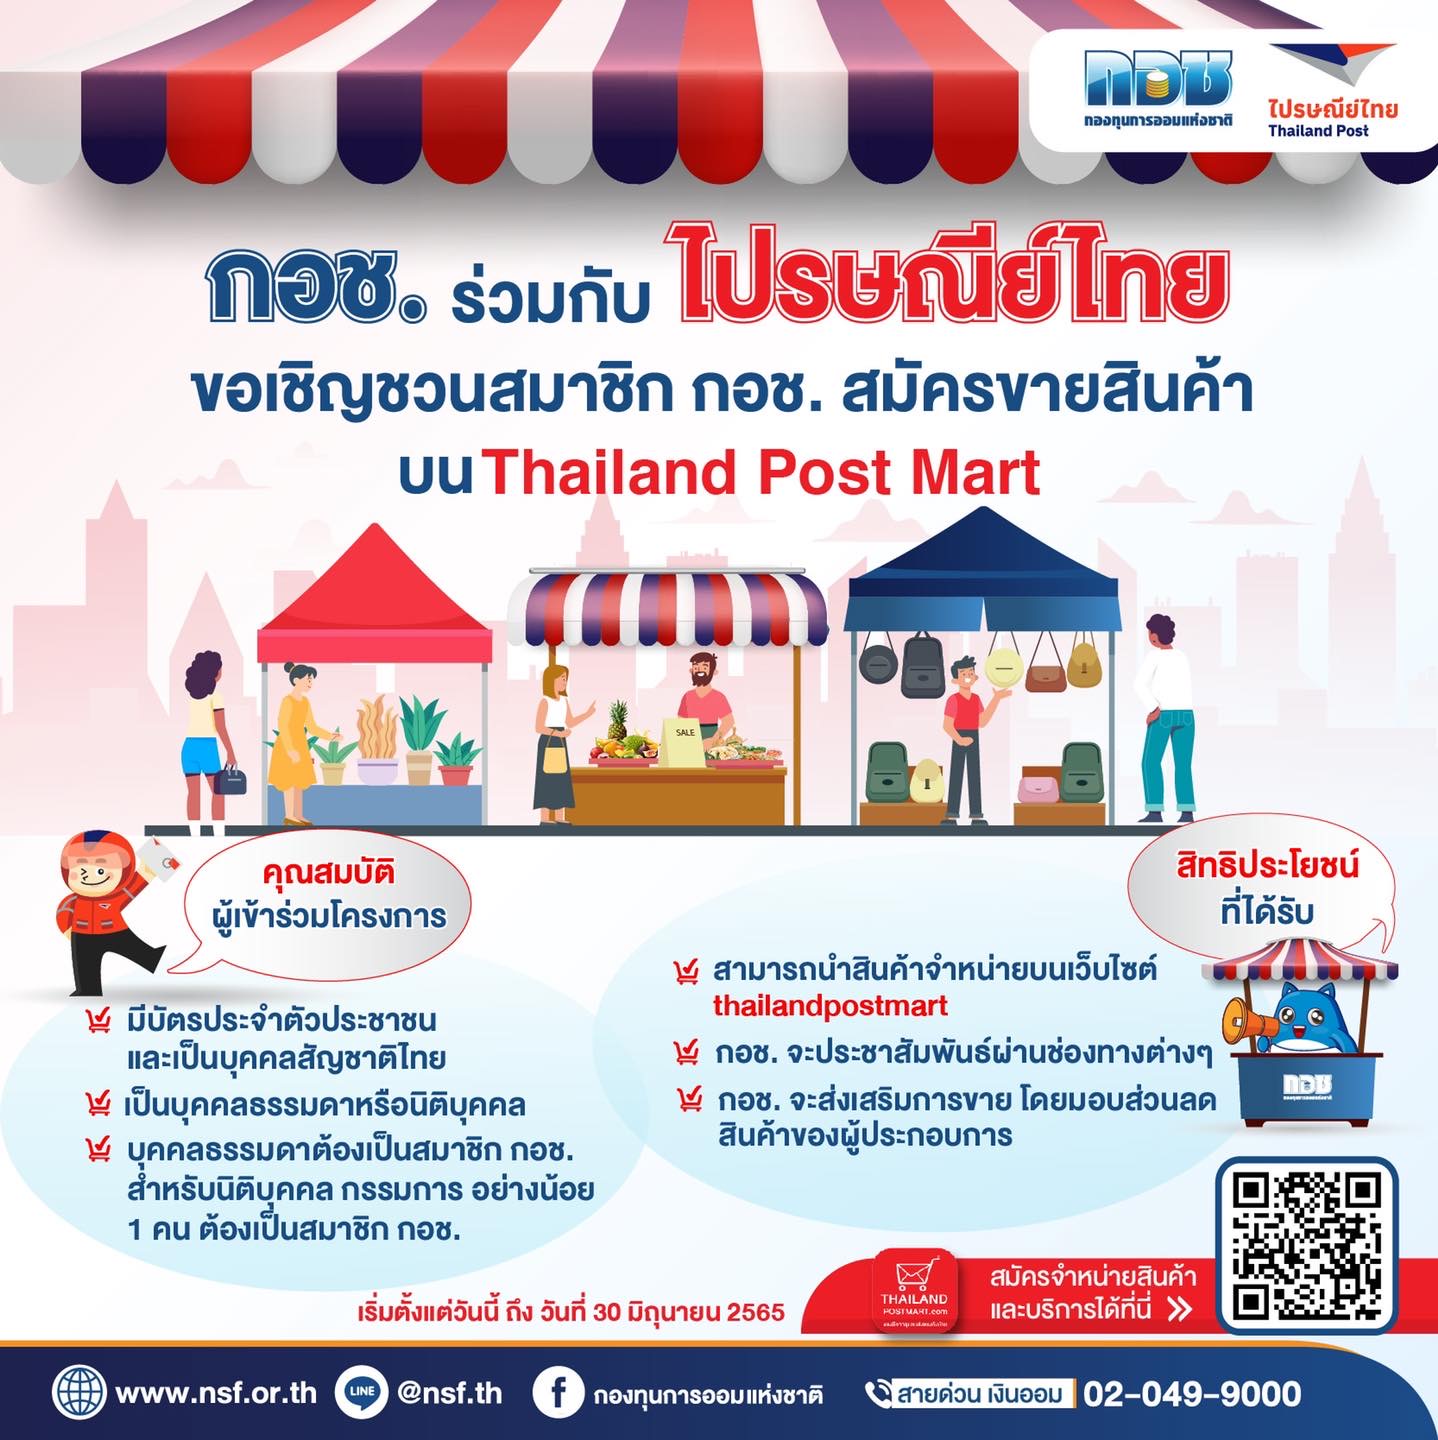 กอช. ร่วมกับ ไปรษณีย์ไทย เพิ่มช่องทางขายสินค้าให้สมาชิกมีรายได้บนเว็บไซต์ Thailand post mart